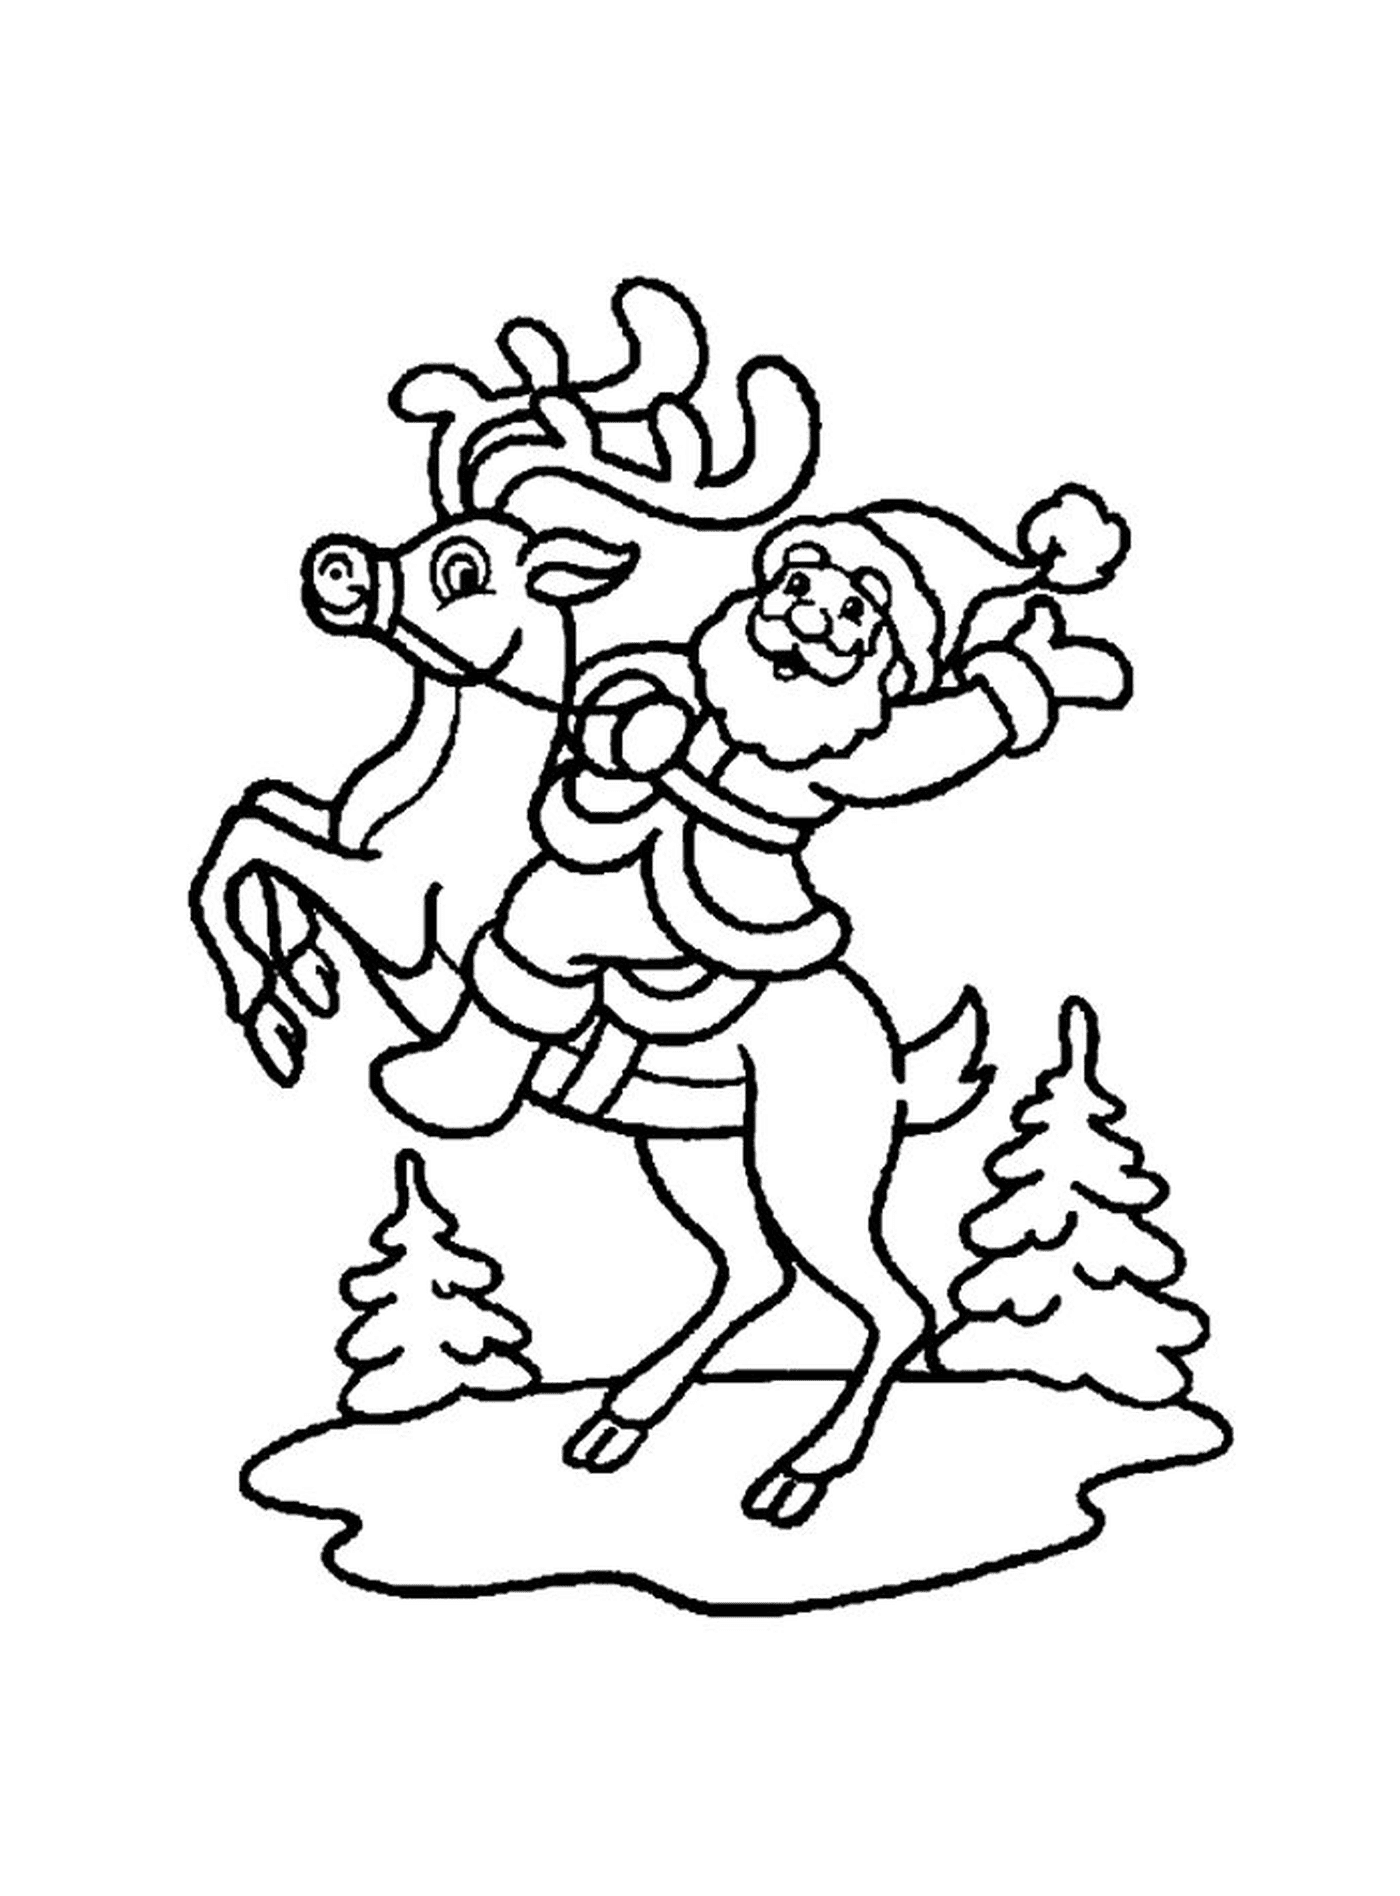  Santa's riding a reindeer 